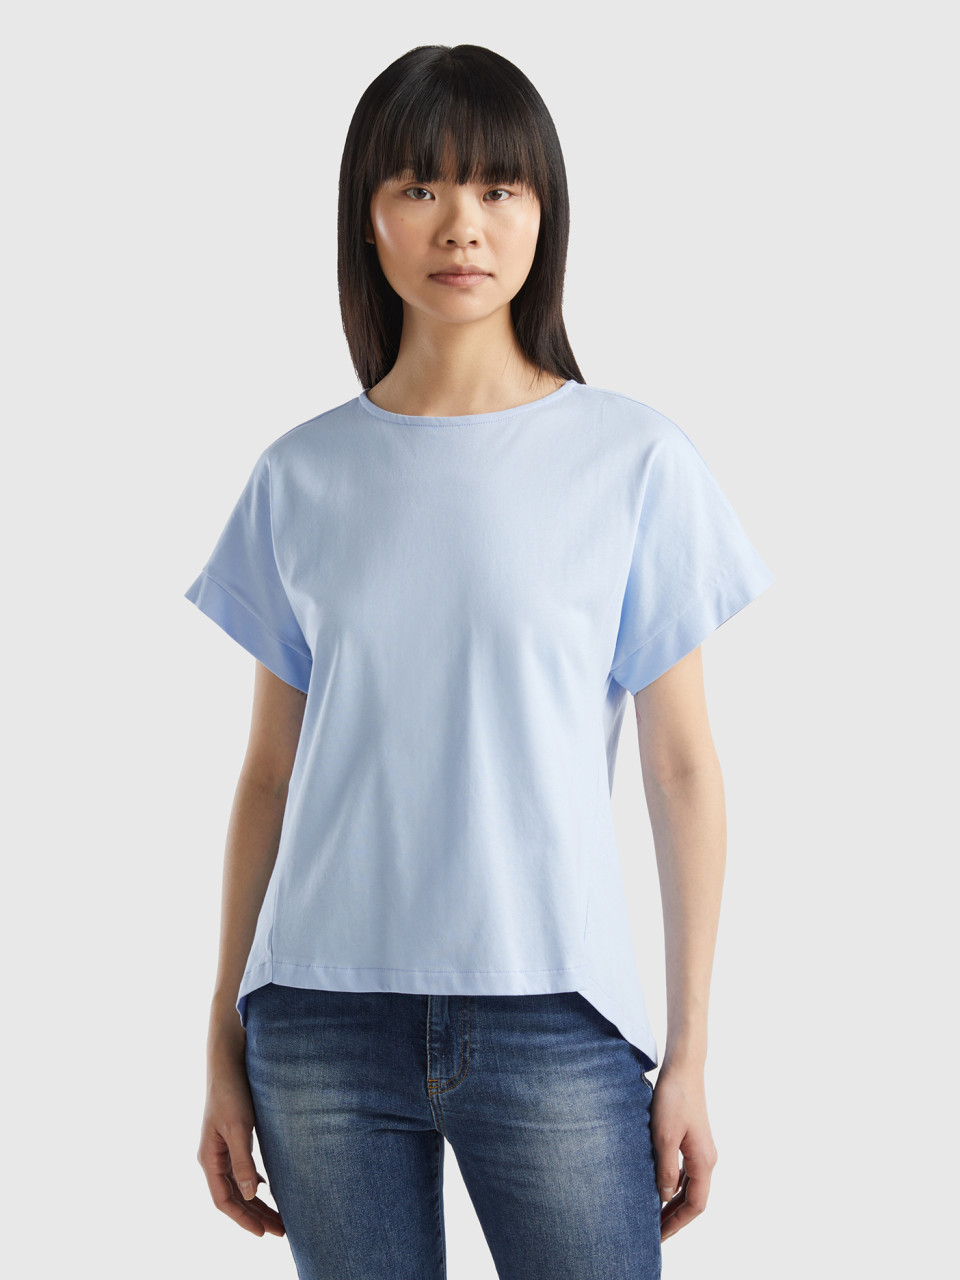 Benetton, T-shirt With Kimono Sleeves, Sky Blue, Men